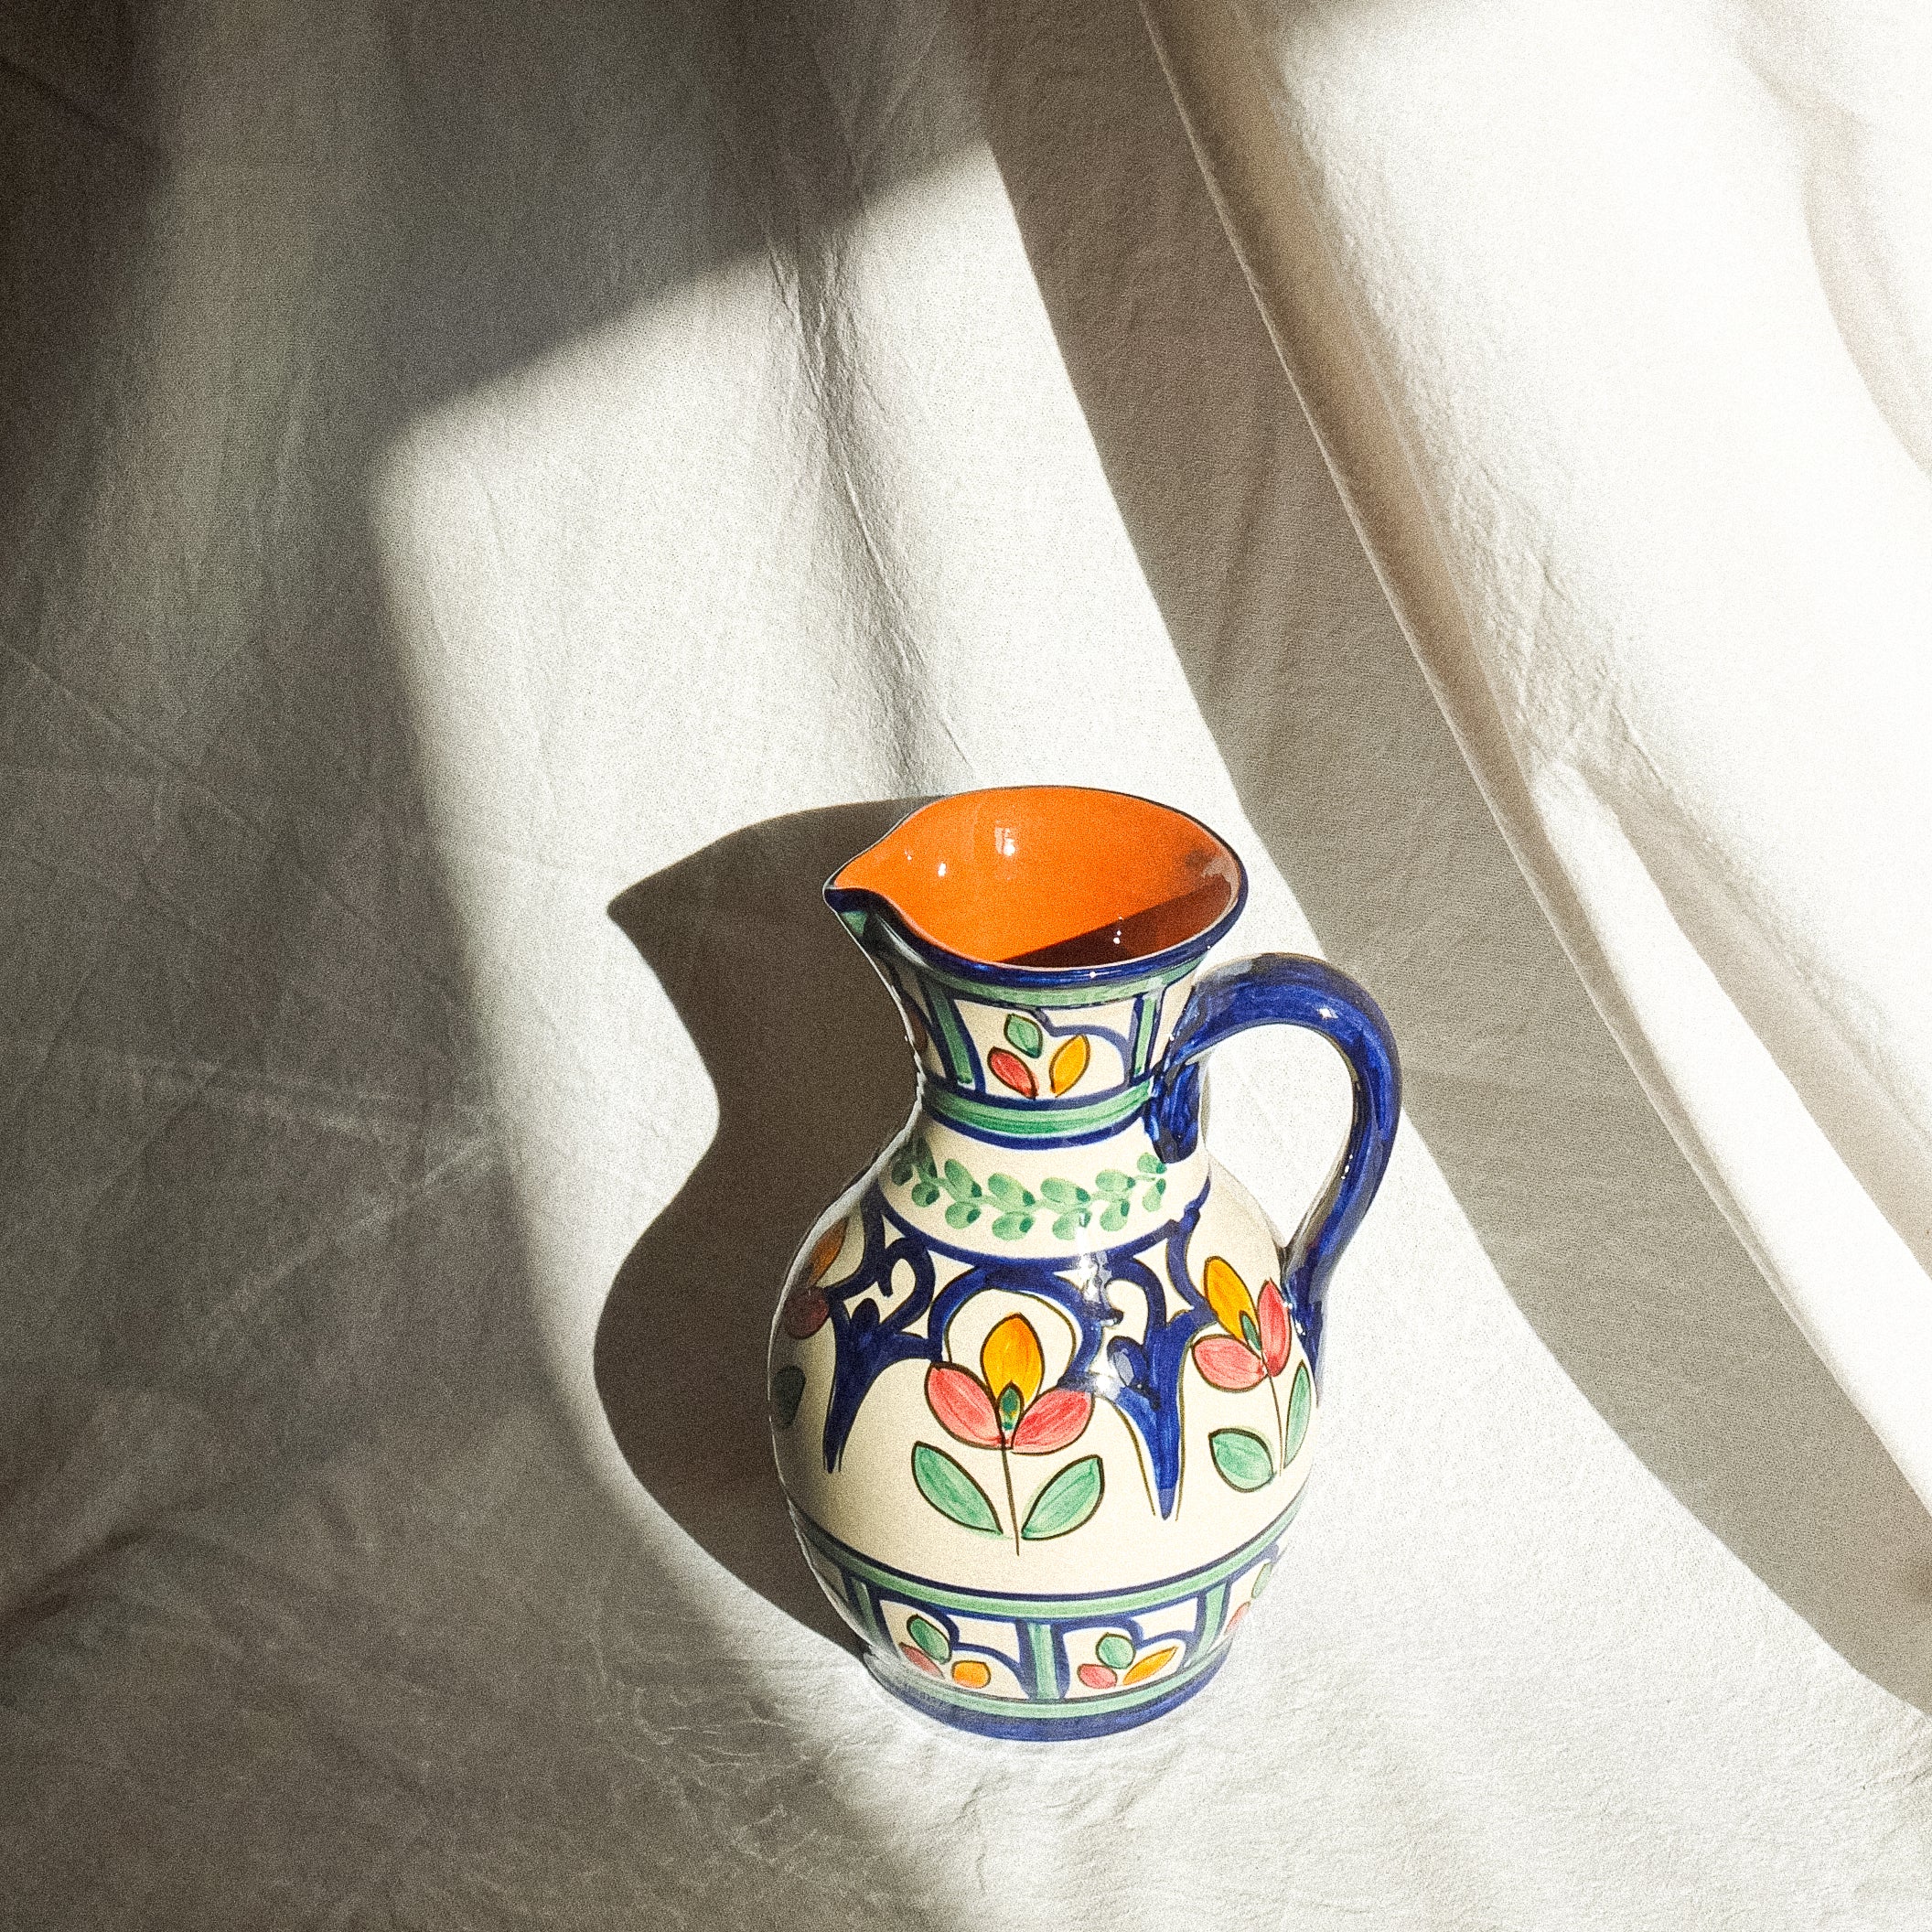 Carafe en terre cuite fabriquée et peinte à la main au Portugal. Contenance de 1 litre. Motifs floraux colorés. 